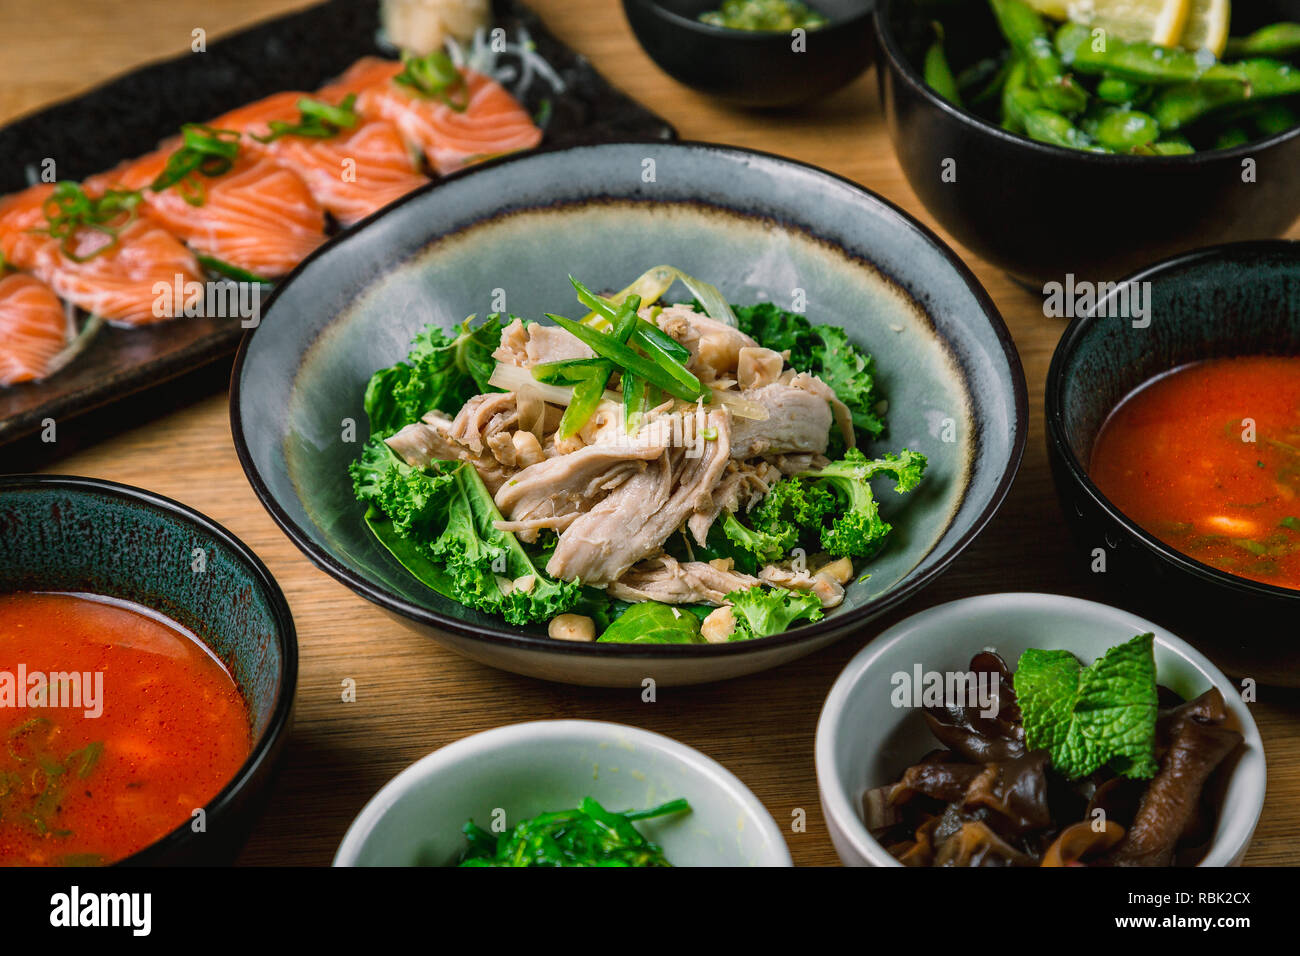 Organic and sustainable food from fancy japanese restaurant, sushi, sashimi, seaweed, edamame Stock Photo